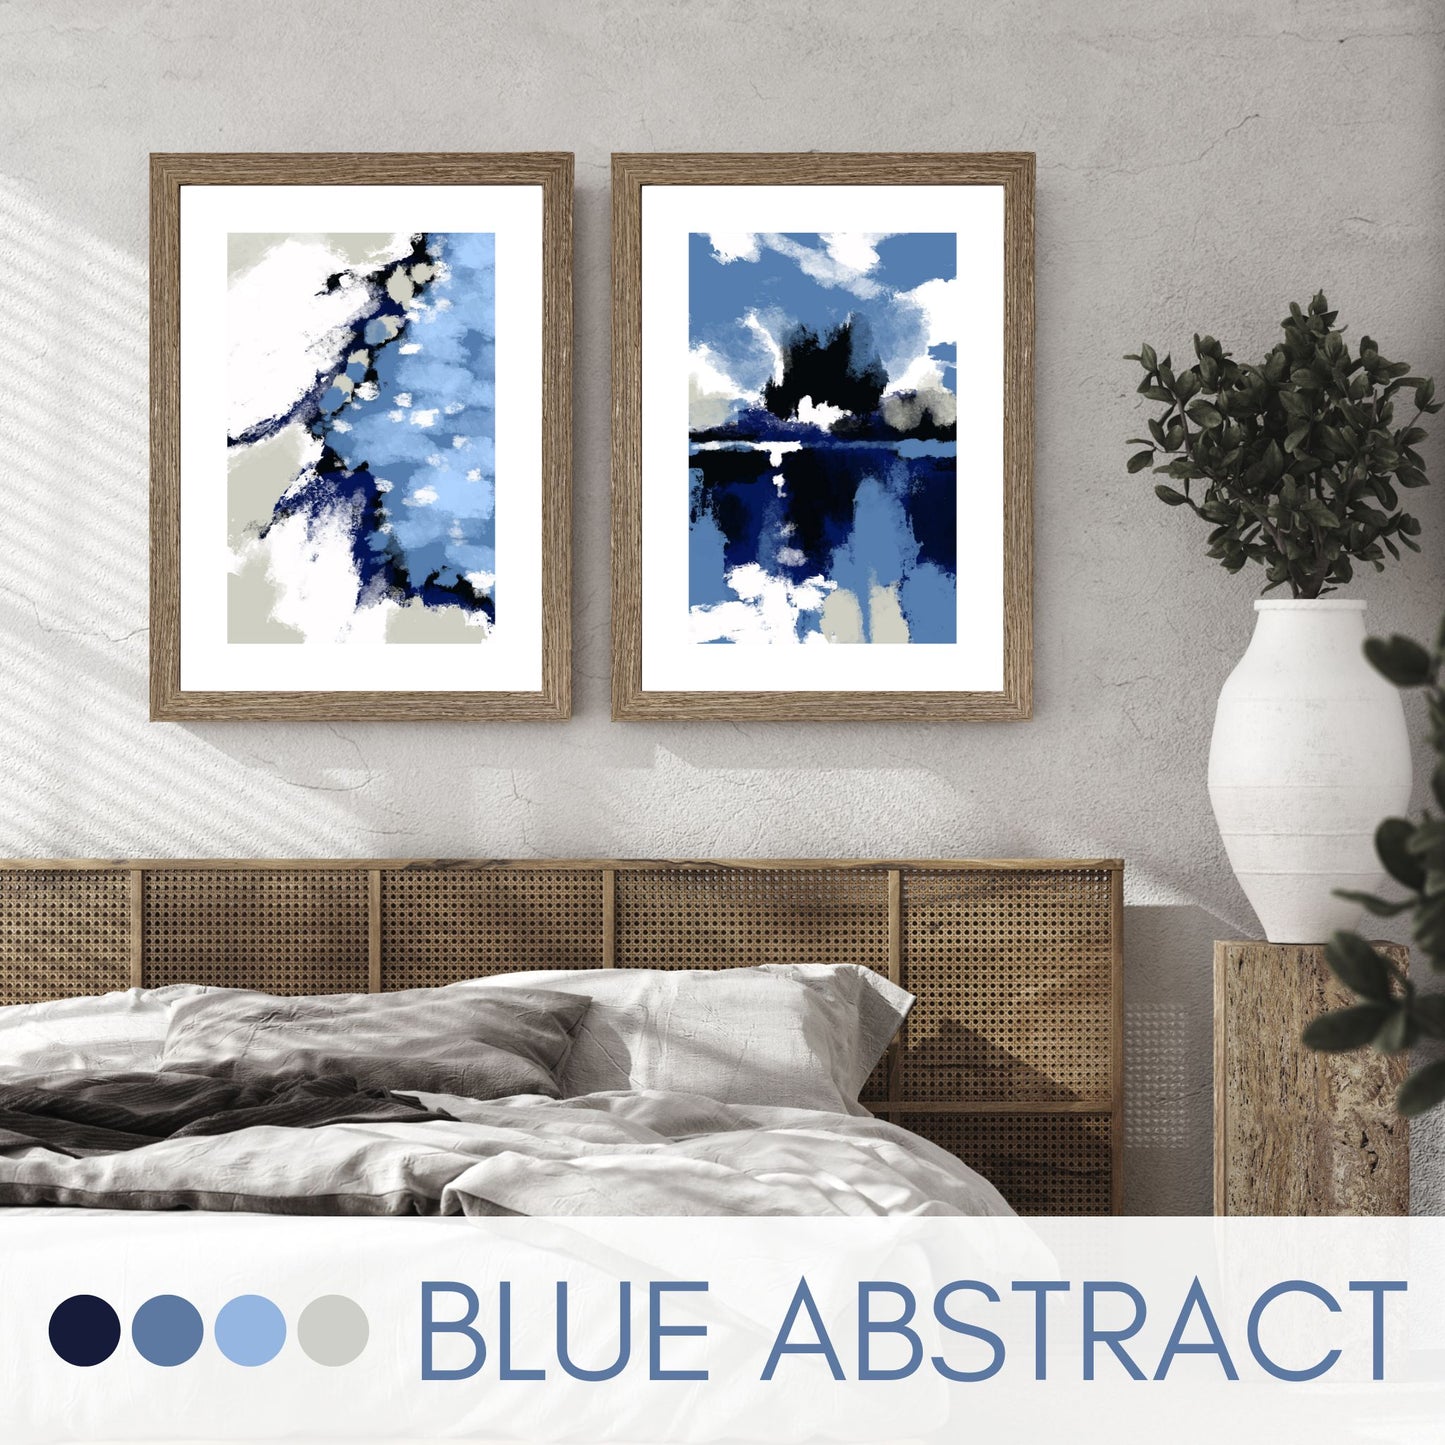 Blue Abstract No1 er en grafisk plakat med et motiv i blåfarger med innslag av hvit og beige. Plakaten har en bred hvit kant som gir bildet dybde og fremhever motivet. Illustrasjon viser Blue Abstrakt No1 og 2 i ramme i eik på en vegg over en seng. 